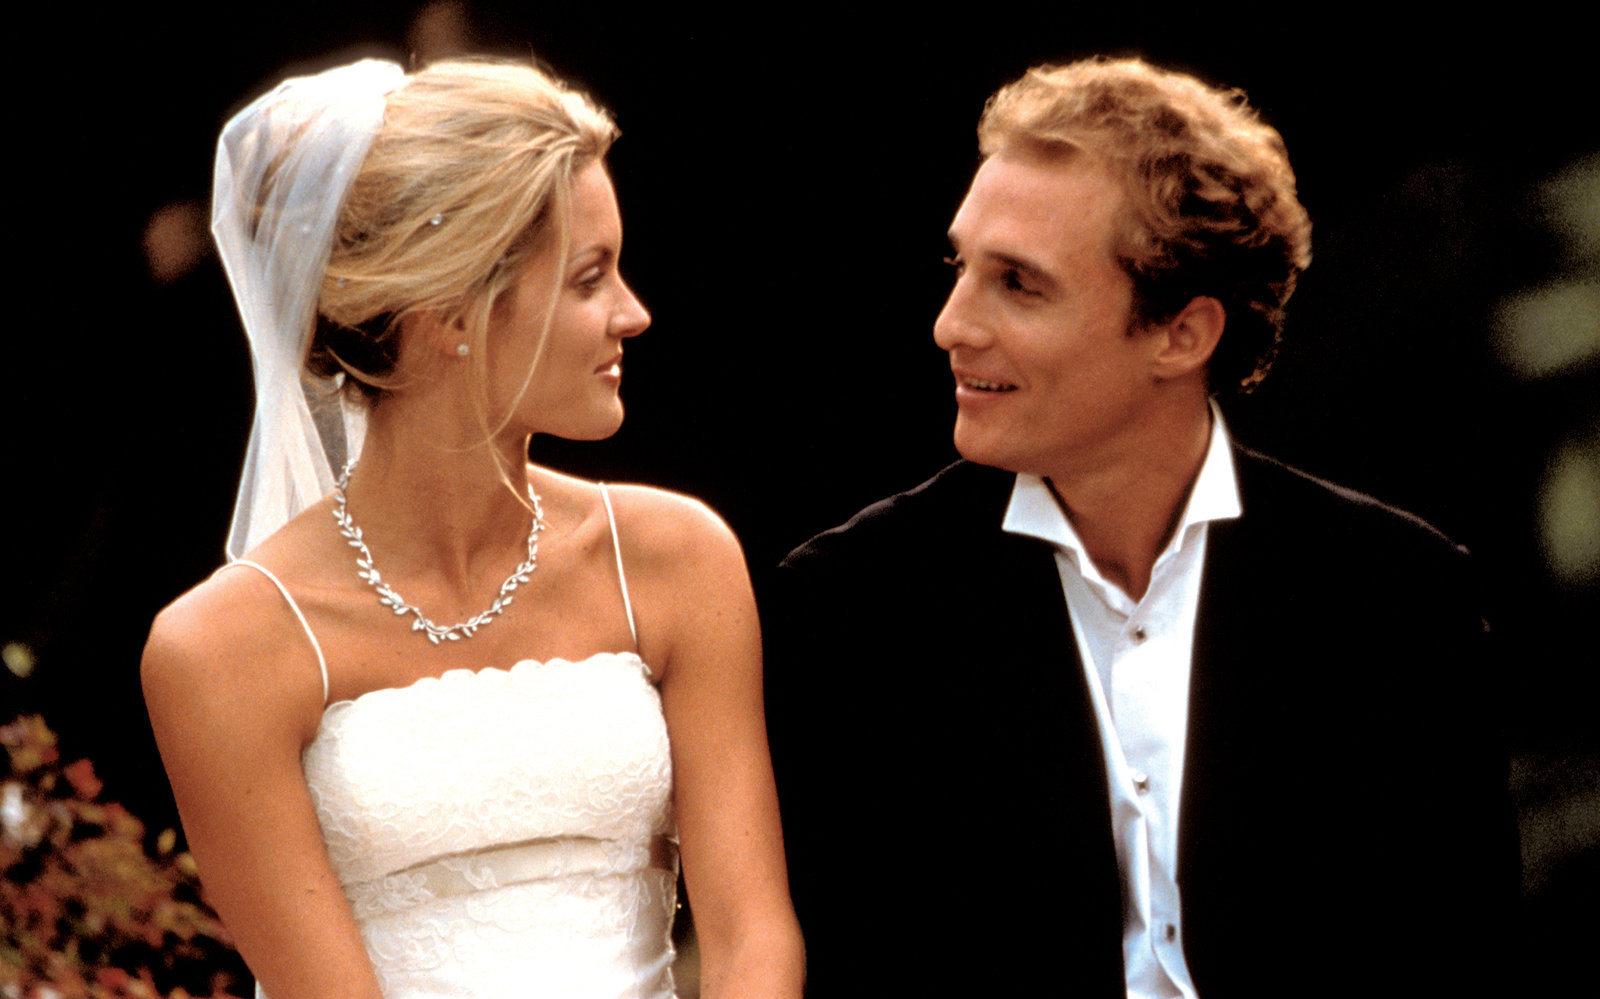 Wedding Planner - Verliebt, verlobt, verplant  (DVD)